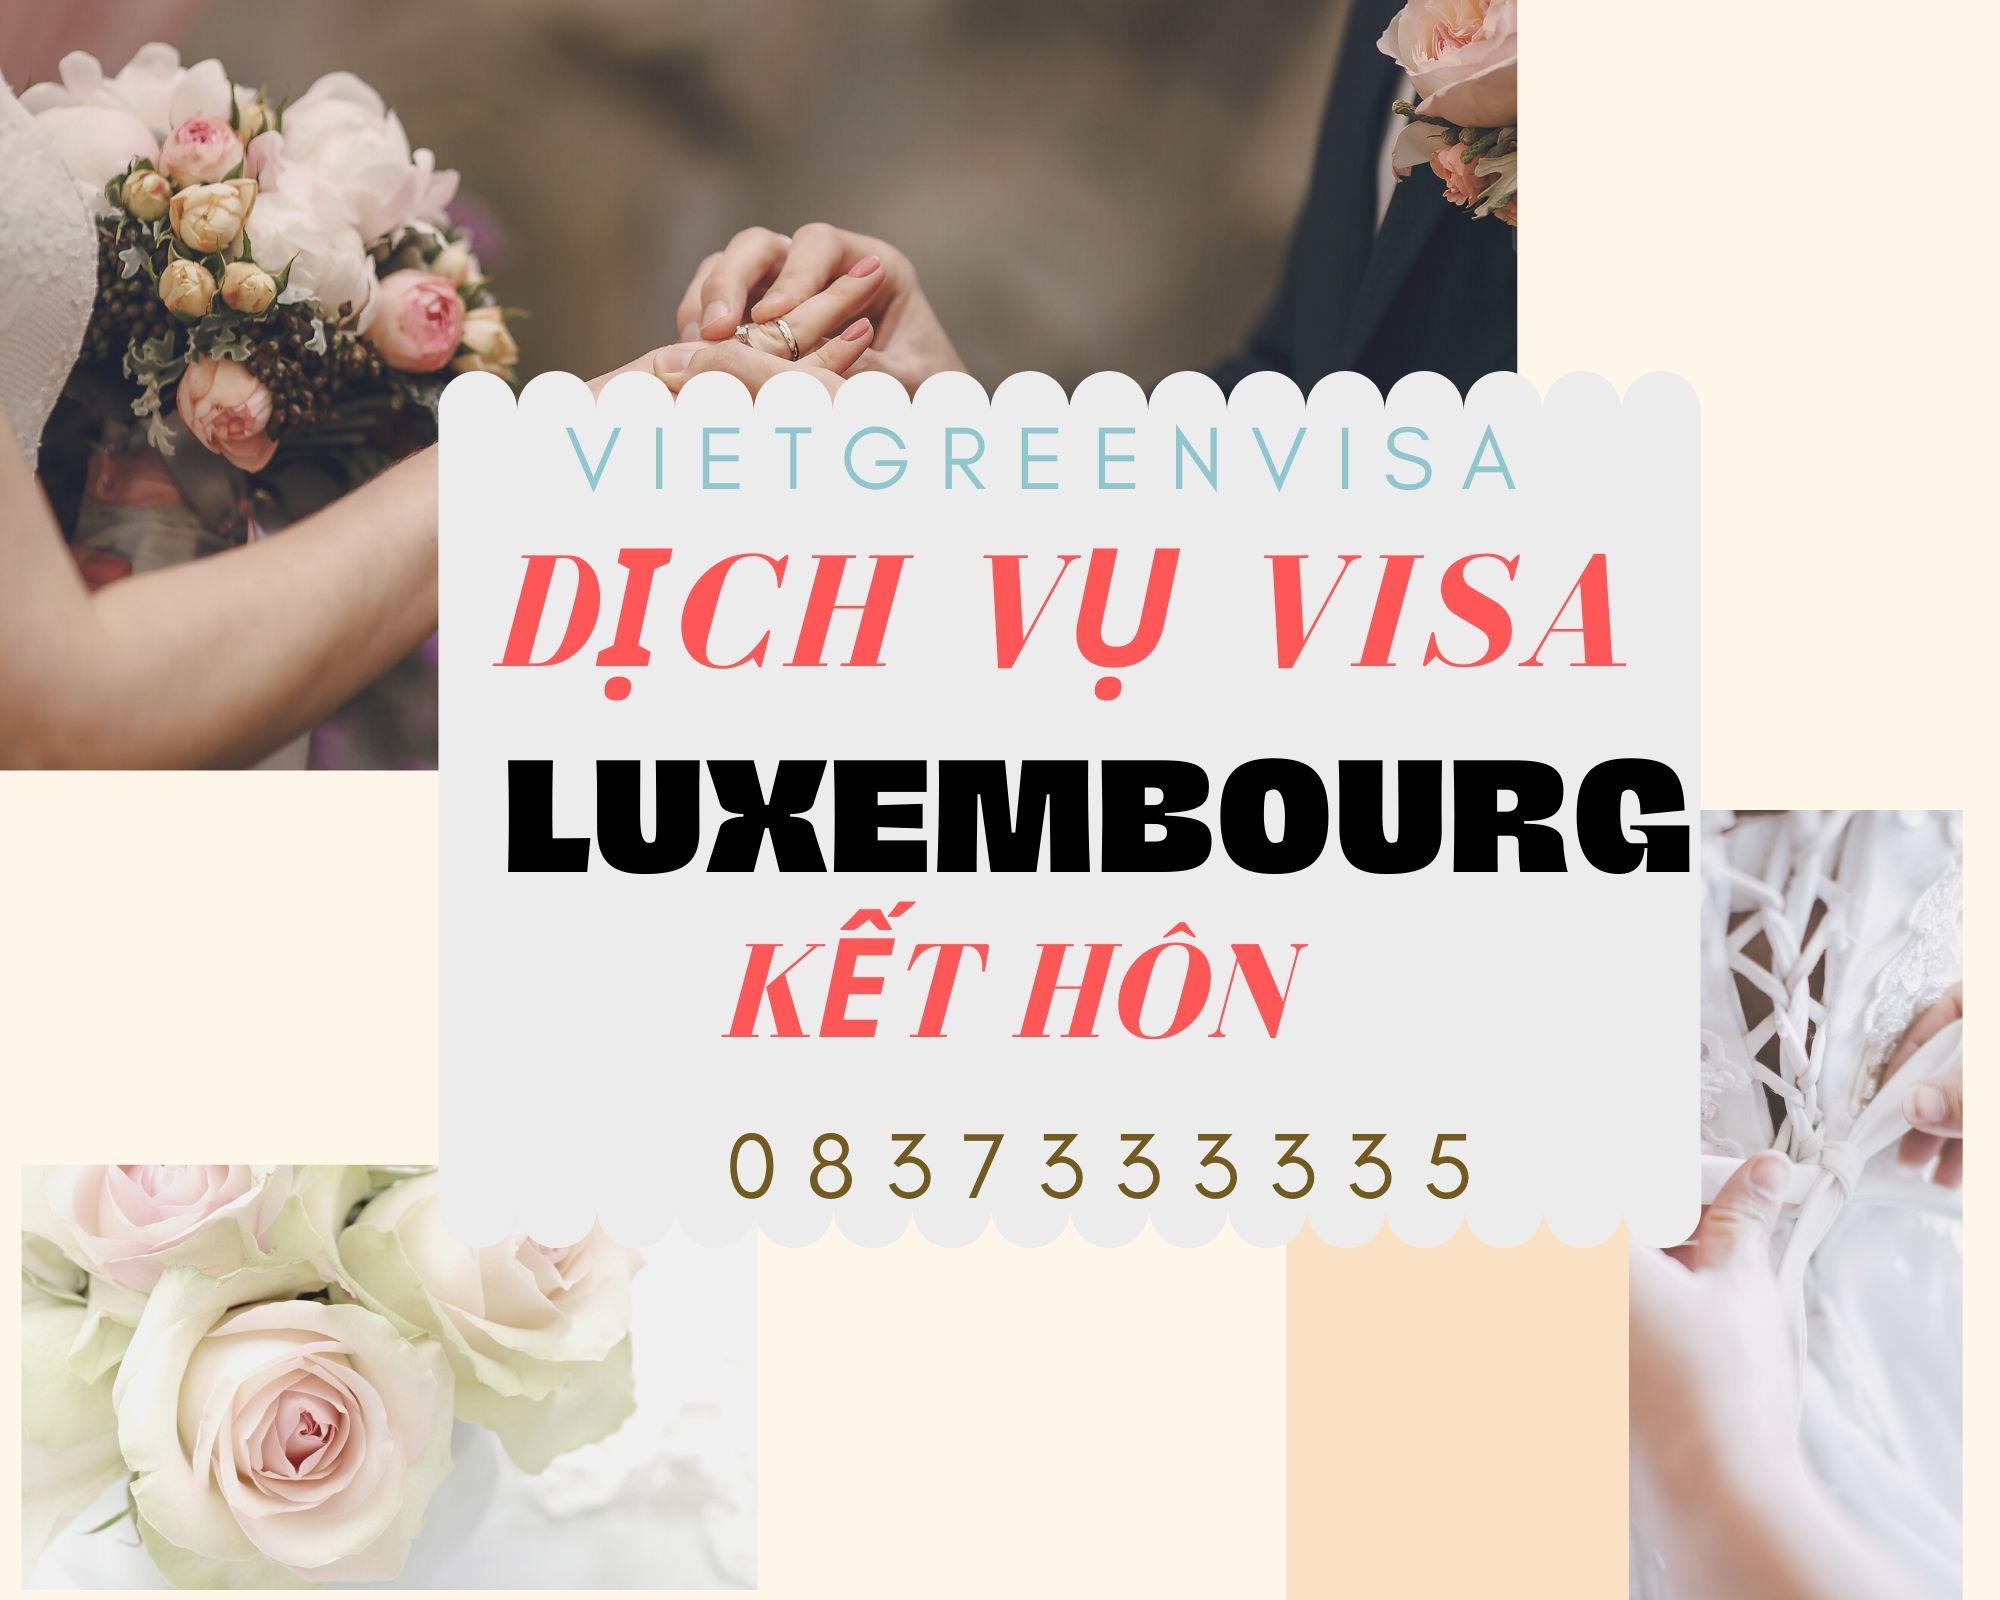 Dịch vụ hỗ trợ xin visa đi Luxembourg kết hôn 